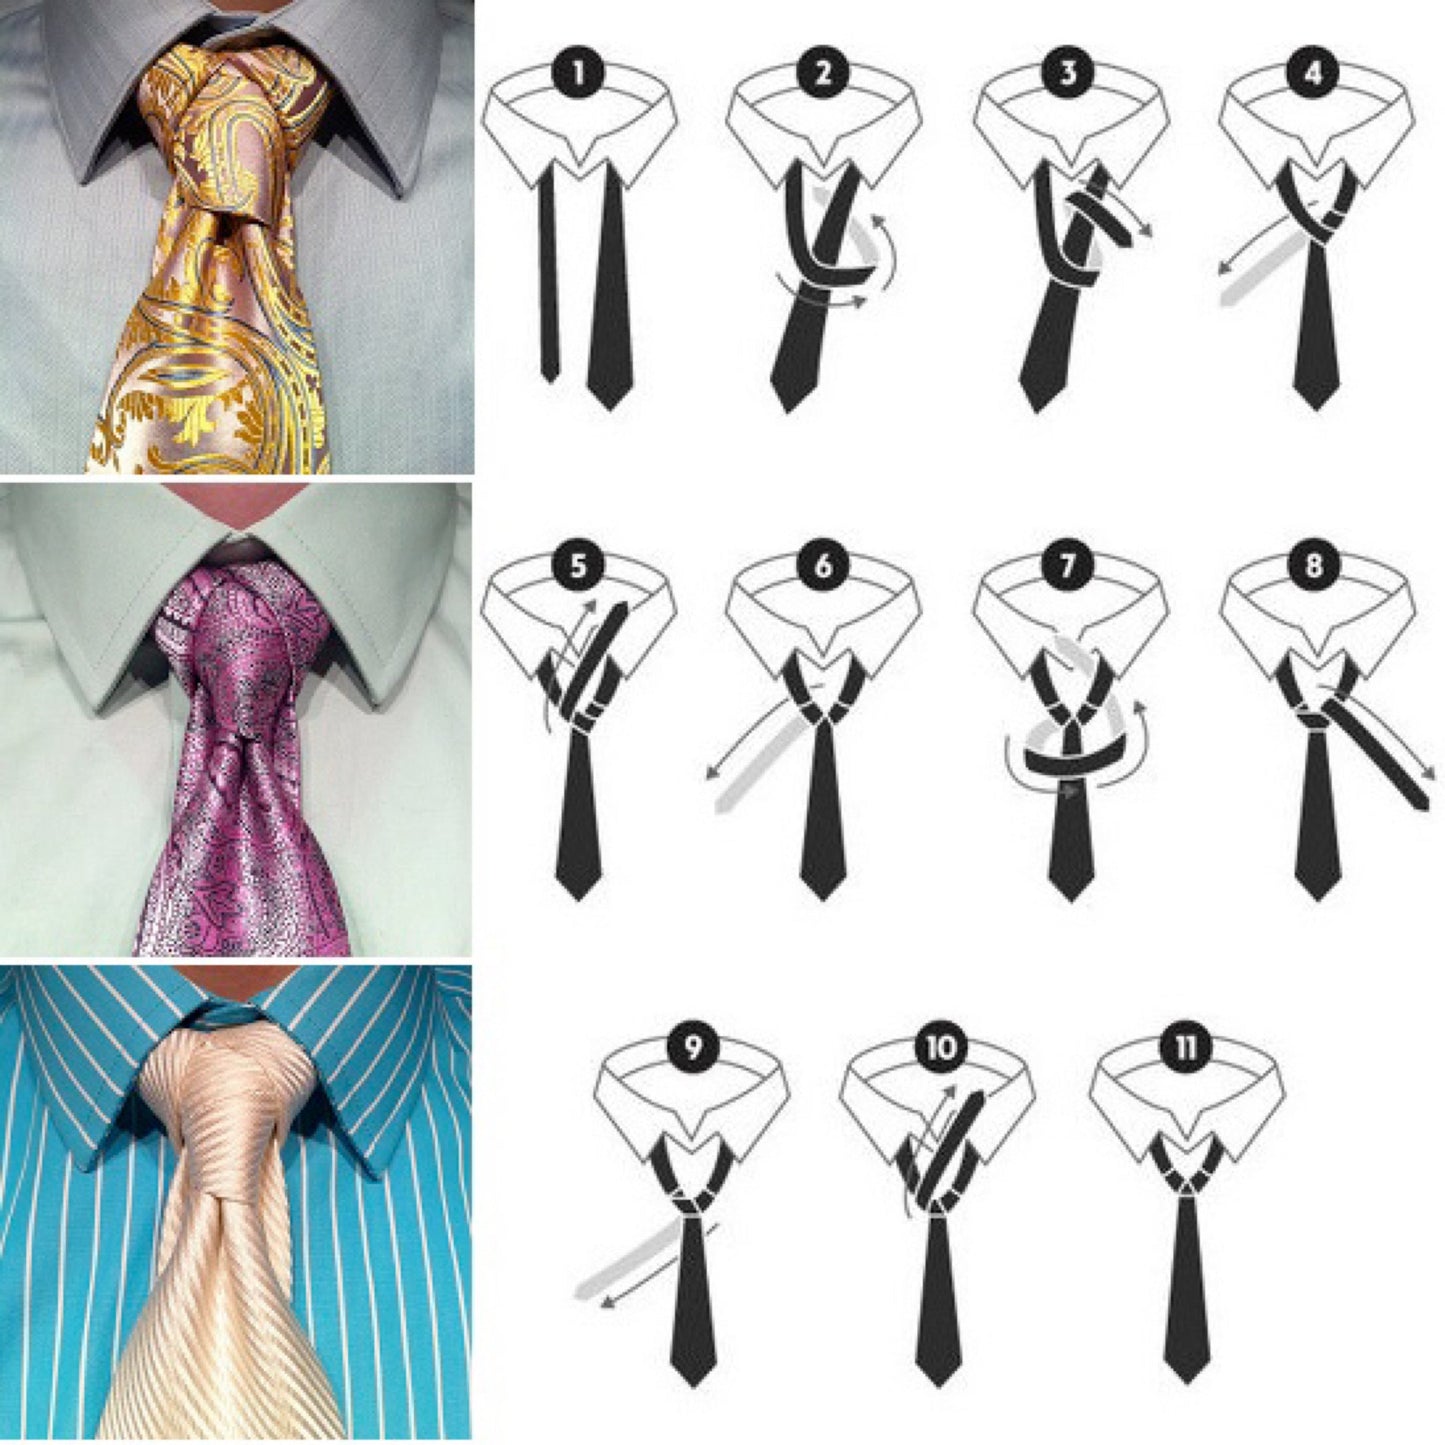 Men’s Silk Coordinated Tie Set -  Golden Beige Striped (5323)